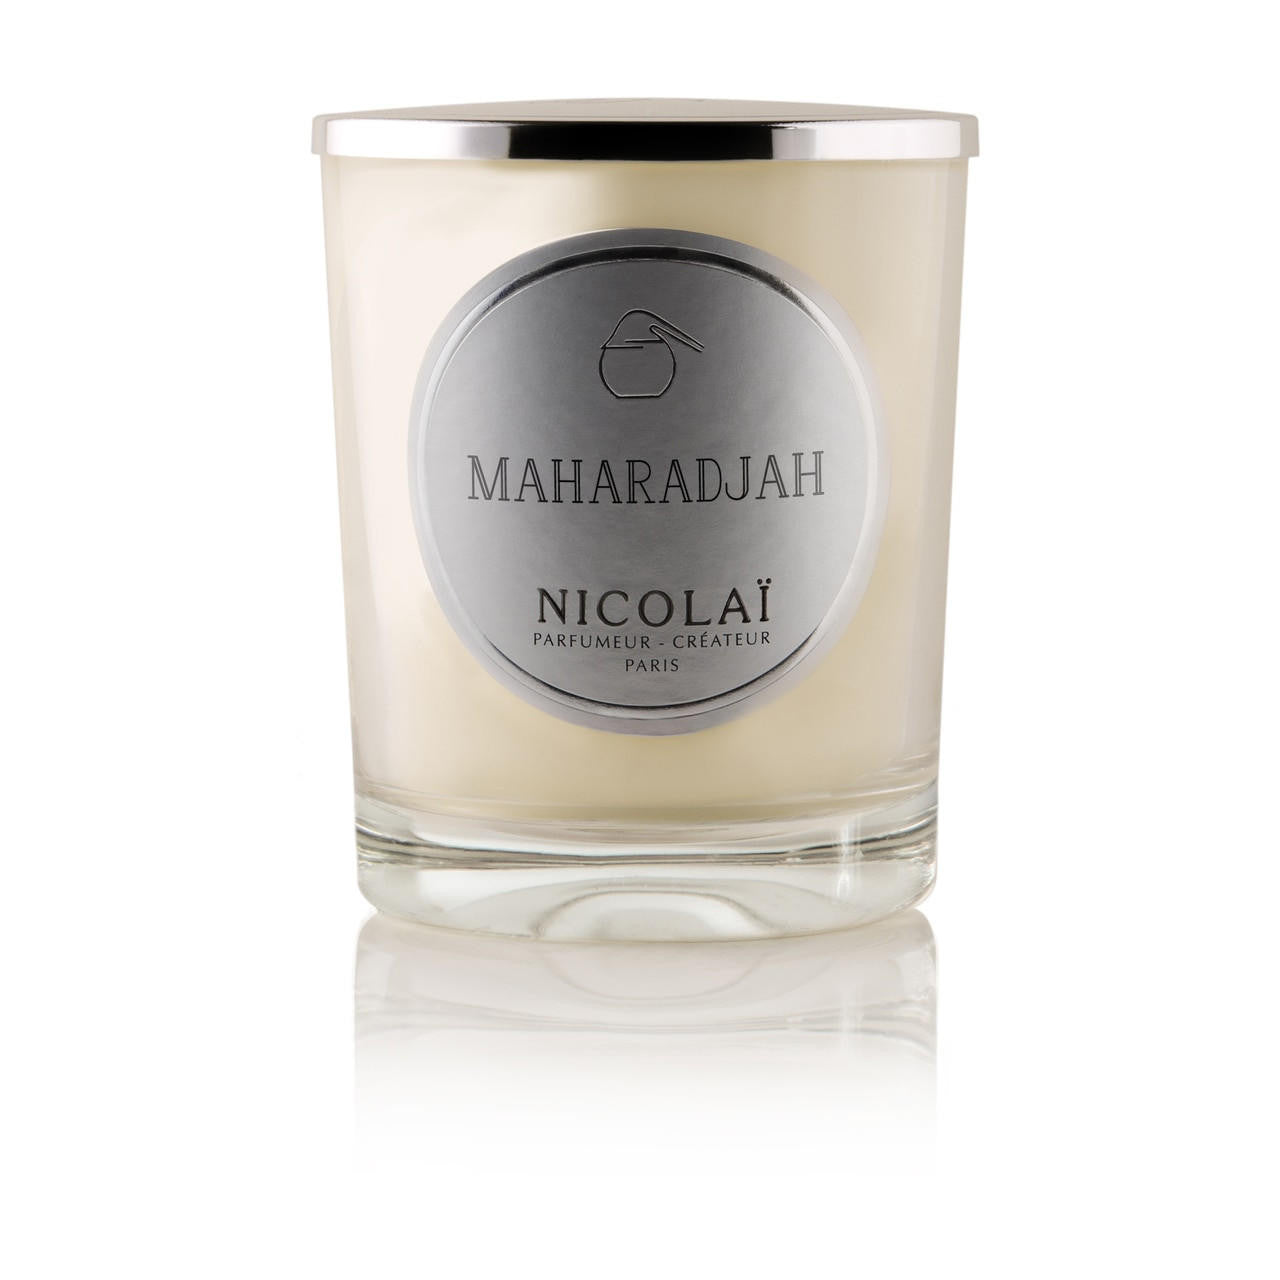  Parfums de Nicolai Maharadjah Candle 